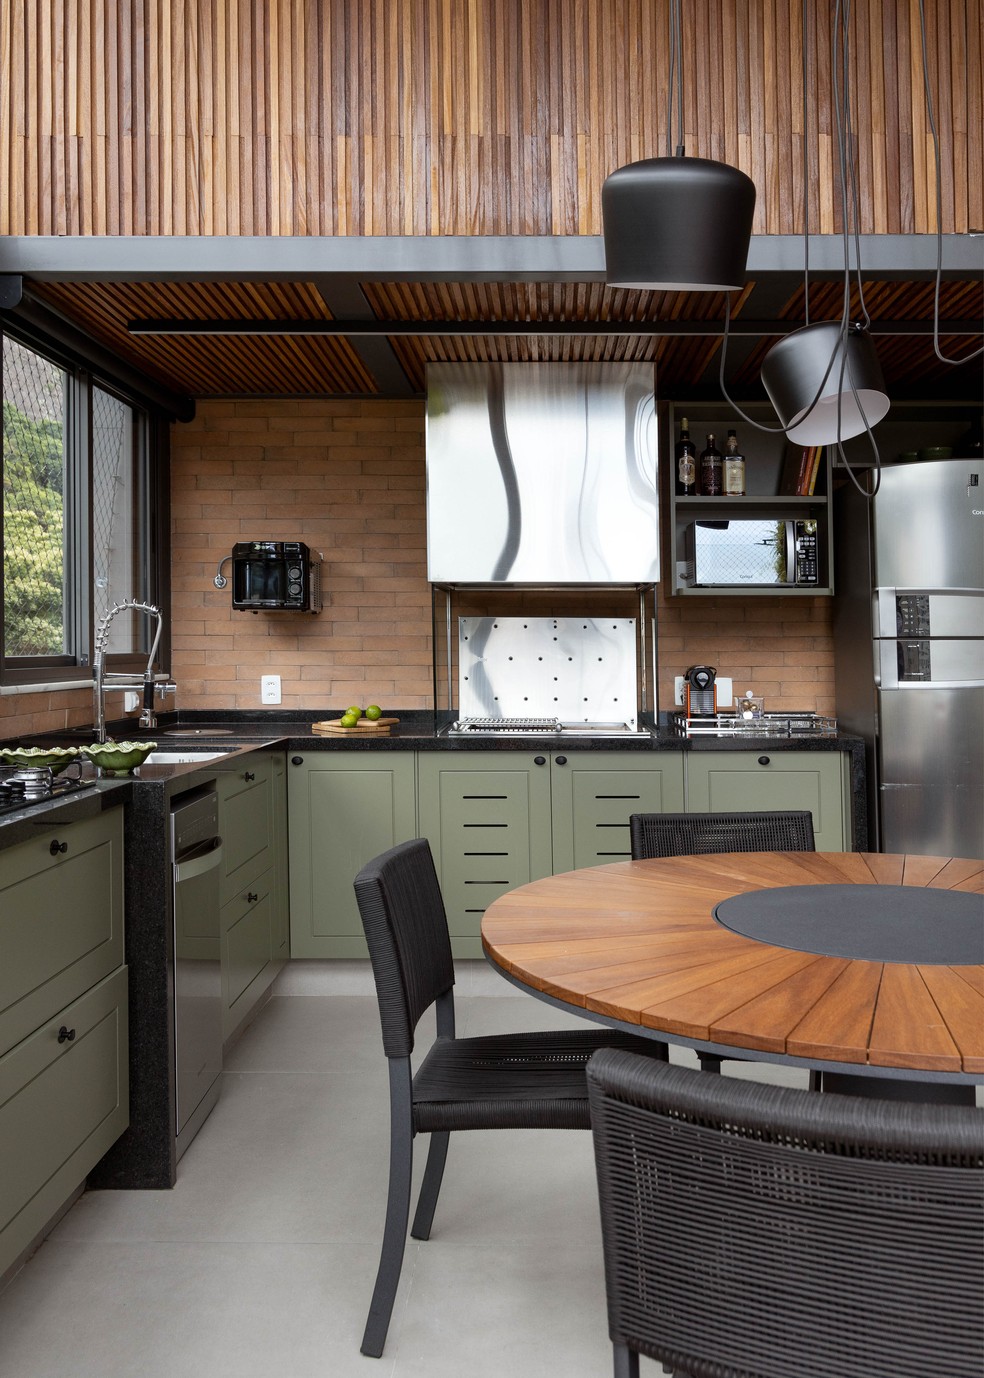 Projeto de cozinha com marcenaria verde musgo, assinado pelas arquitetas Paula Wetzel e Camila Simbalista — Foto: André Nazareth